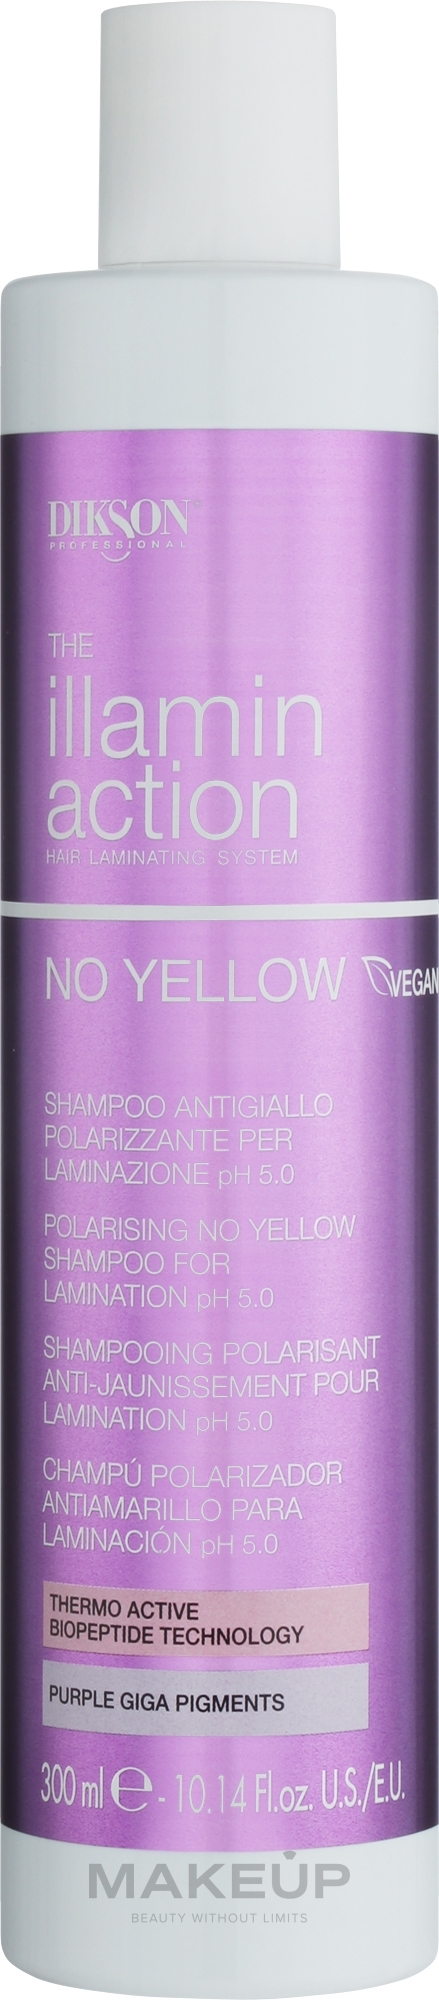 Шампунь нейтрализатор желтизны для ламинирования волос - Dikson Illaminaction No Yellow Polarising No Yellow Shampoo For Lamination pH 5.5 — фото 300ml